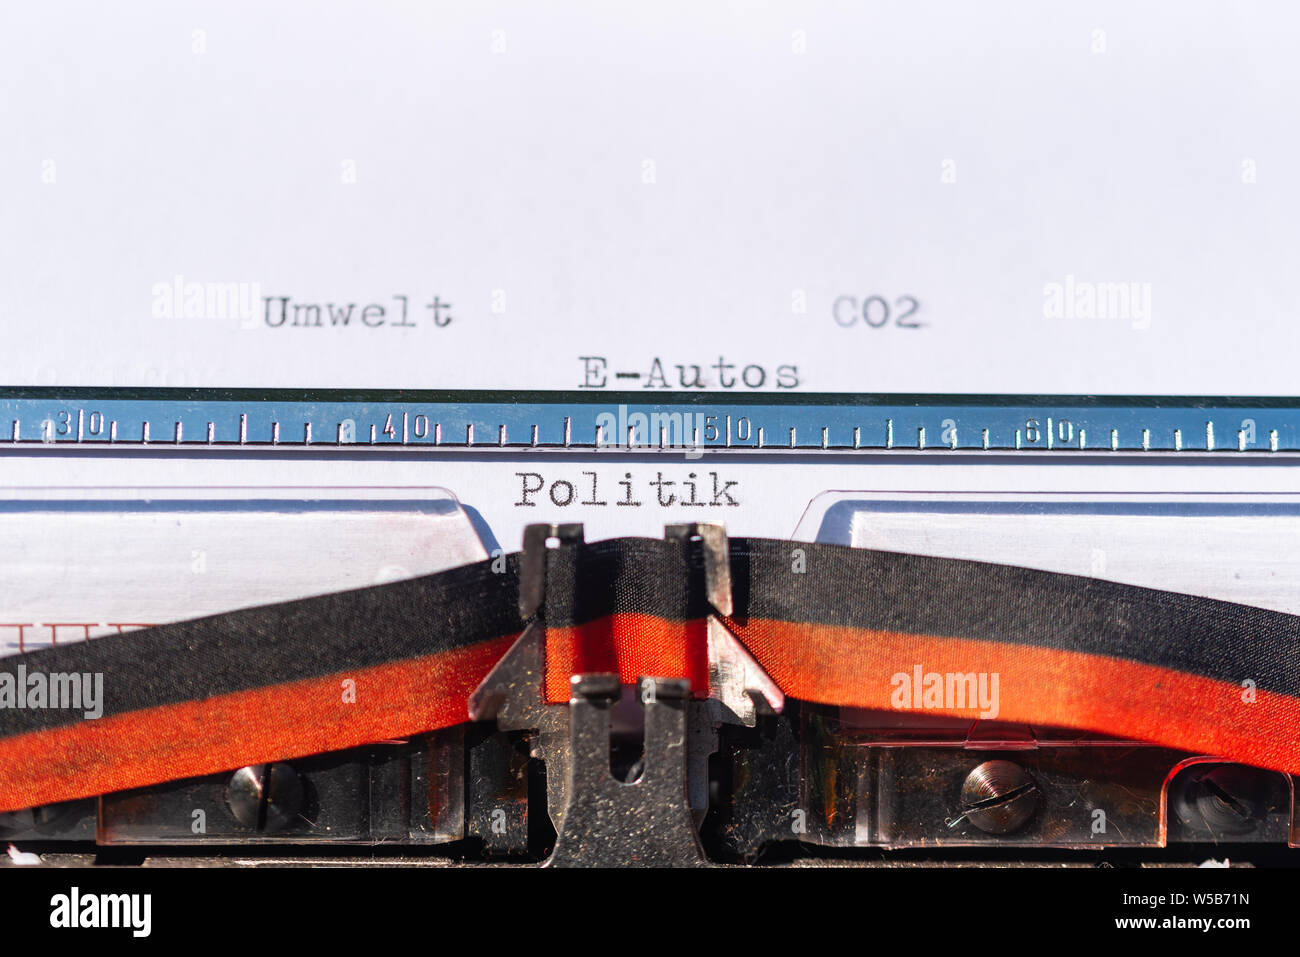 Nastri inchiostratori per macchine da scrivere con una foglia e le parole Umwelt, CO2, E-Autos und Politik (ambiente, CO2, E-auto e politica) Foto Stock